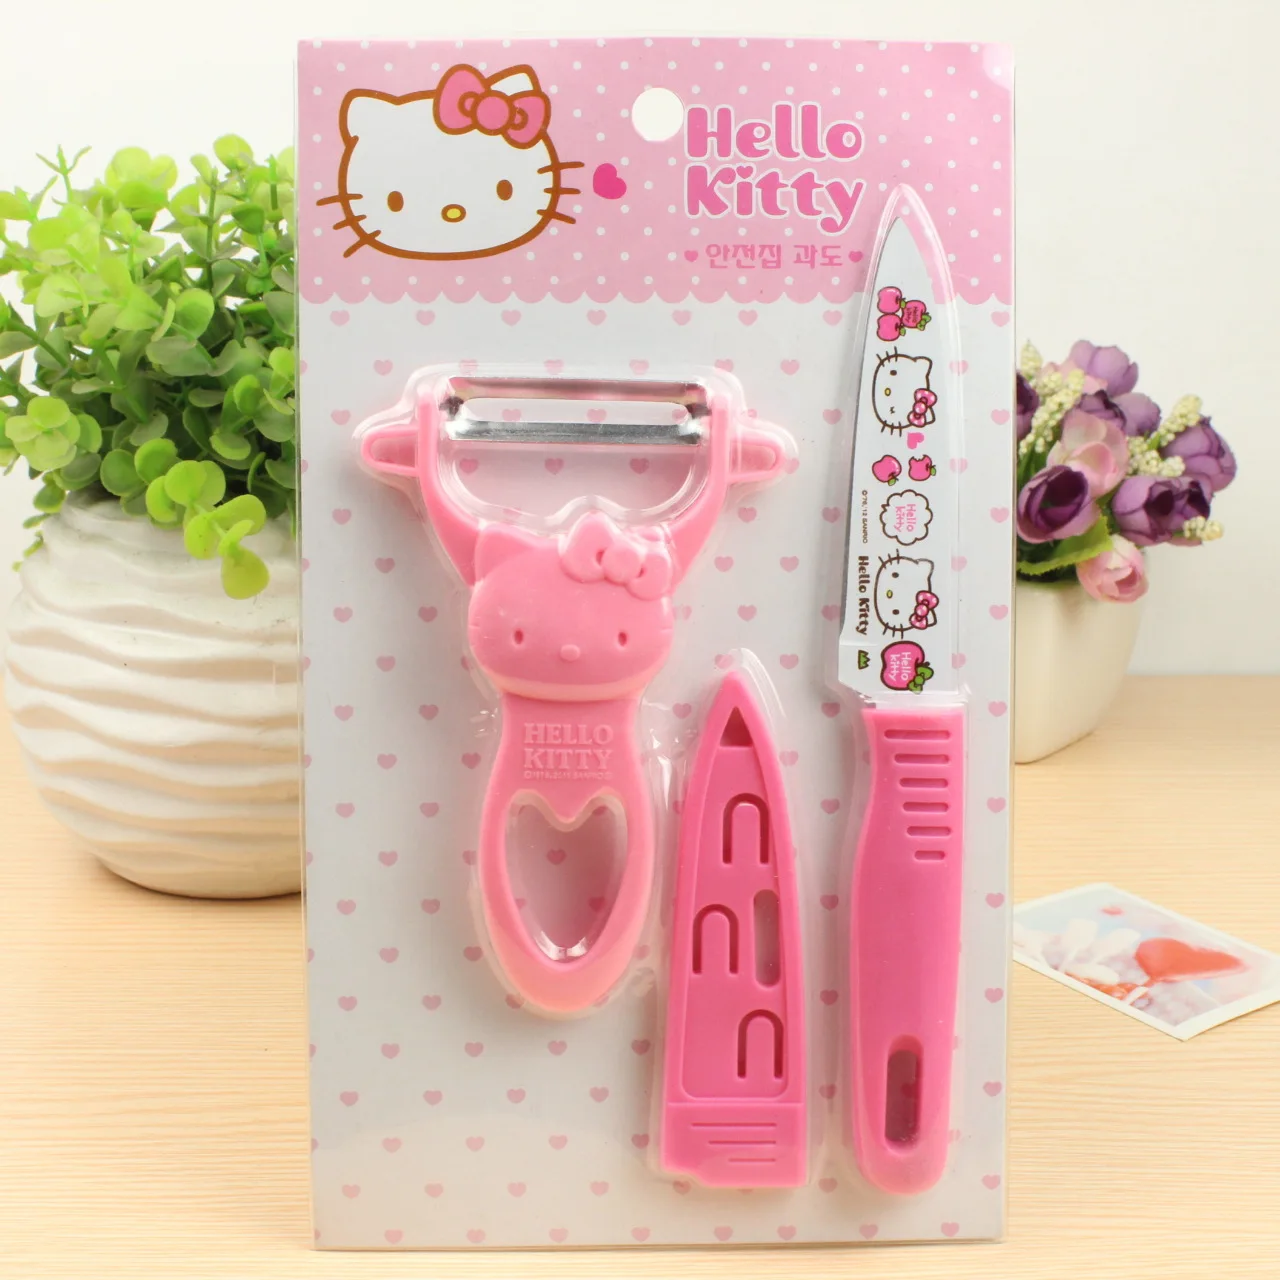 Hello Kitty Knife & Peeler Set